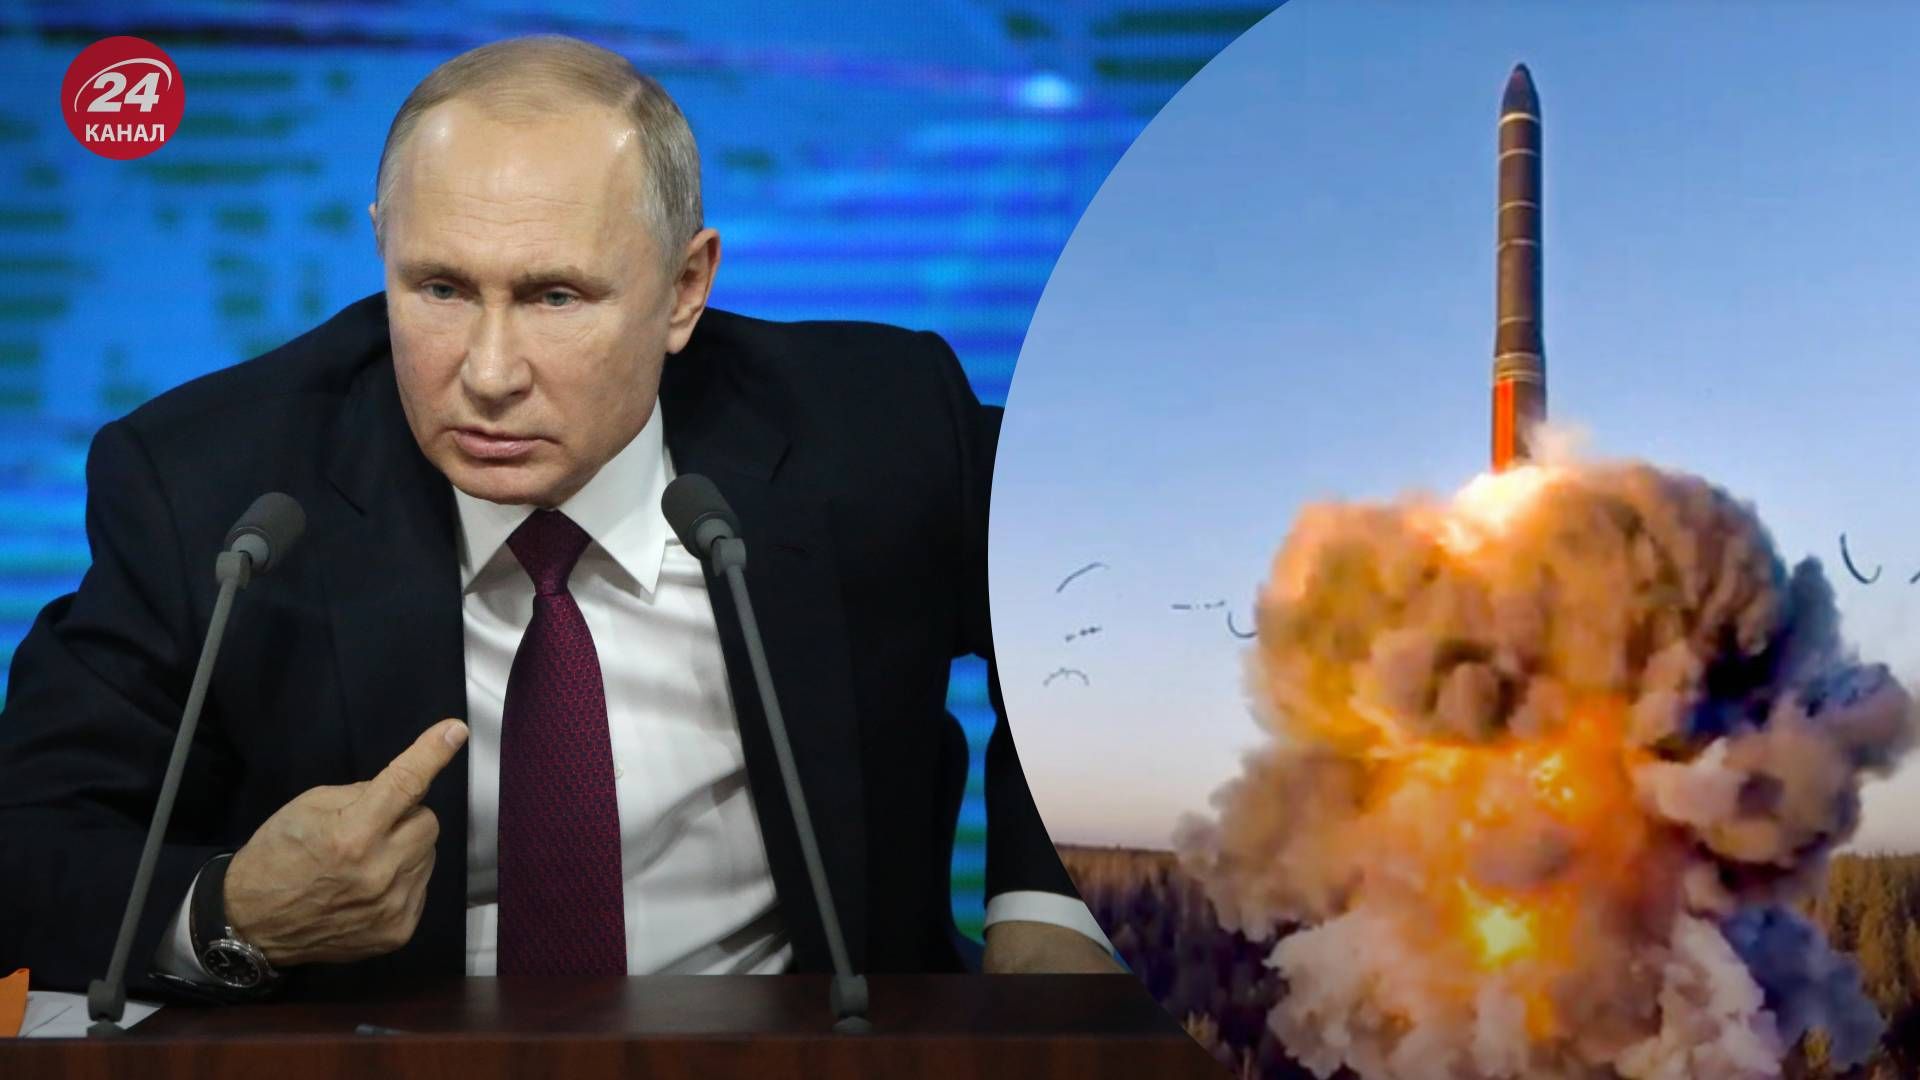 О чем могут свидетельствовать заявления Путина о ядерном оружии - 24 Канал